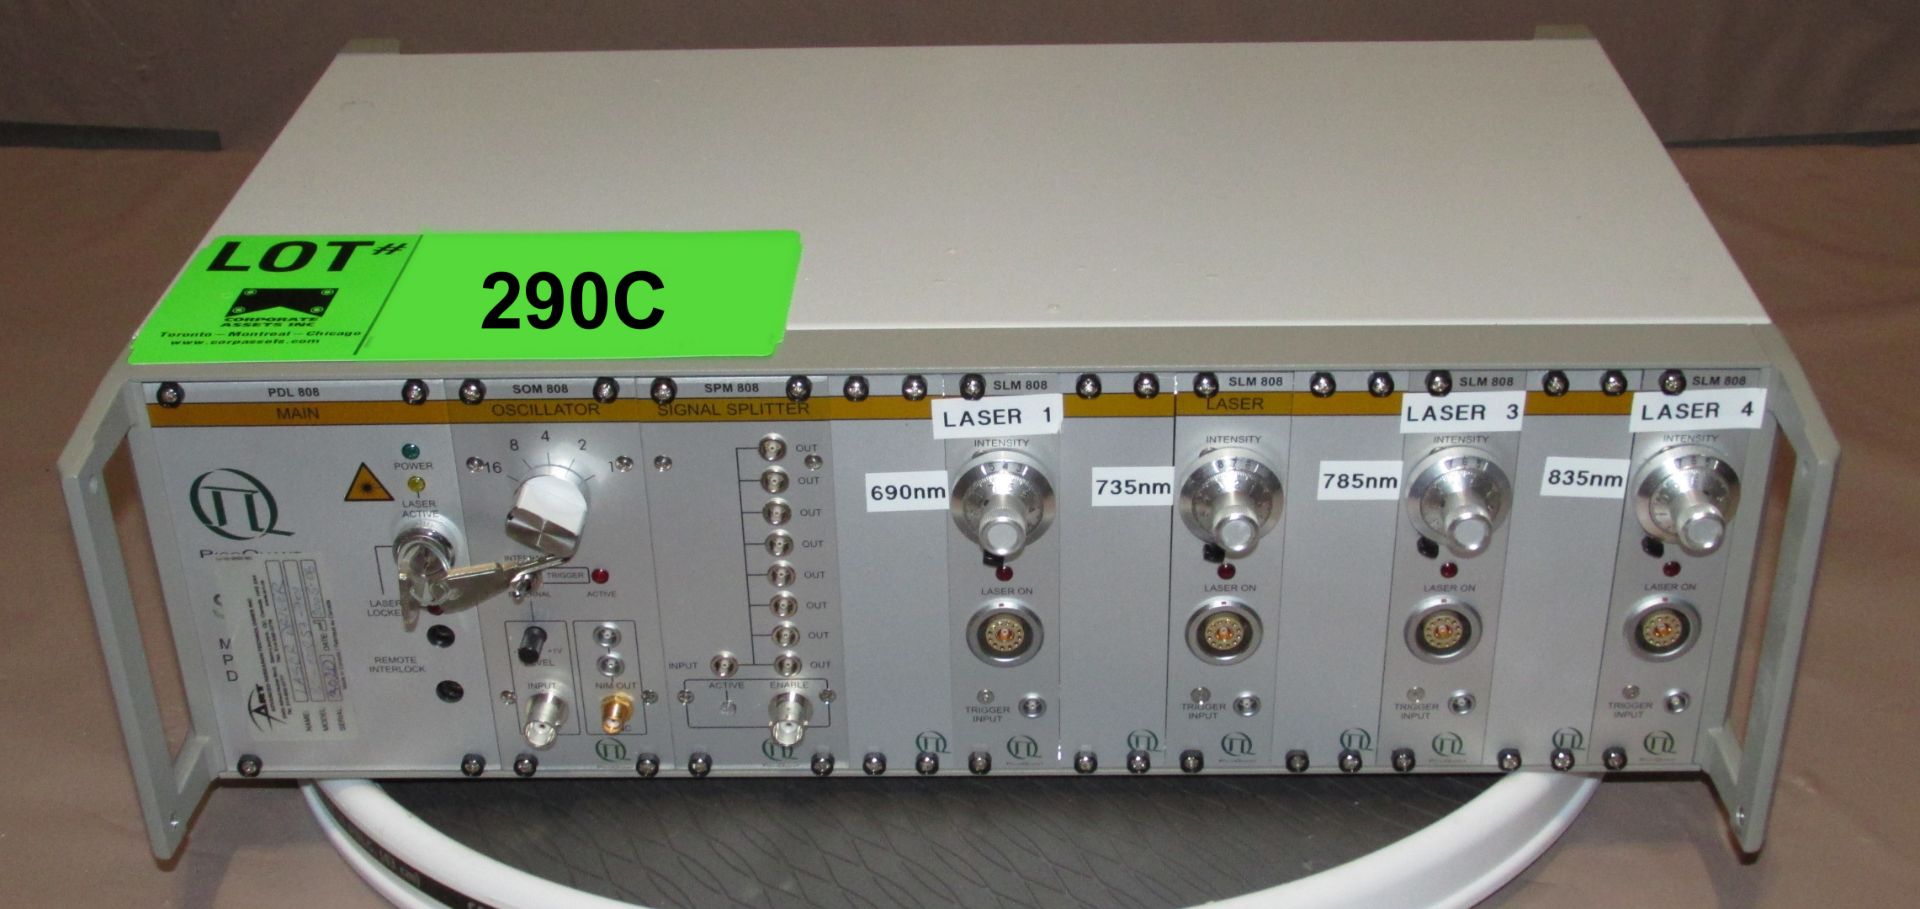 PICO-QUANT SEPIA PDL-808 MULTI-CHANNEL PICO SECOND DIODE LASER WITH SCM-808 OSCILLATOR